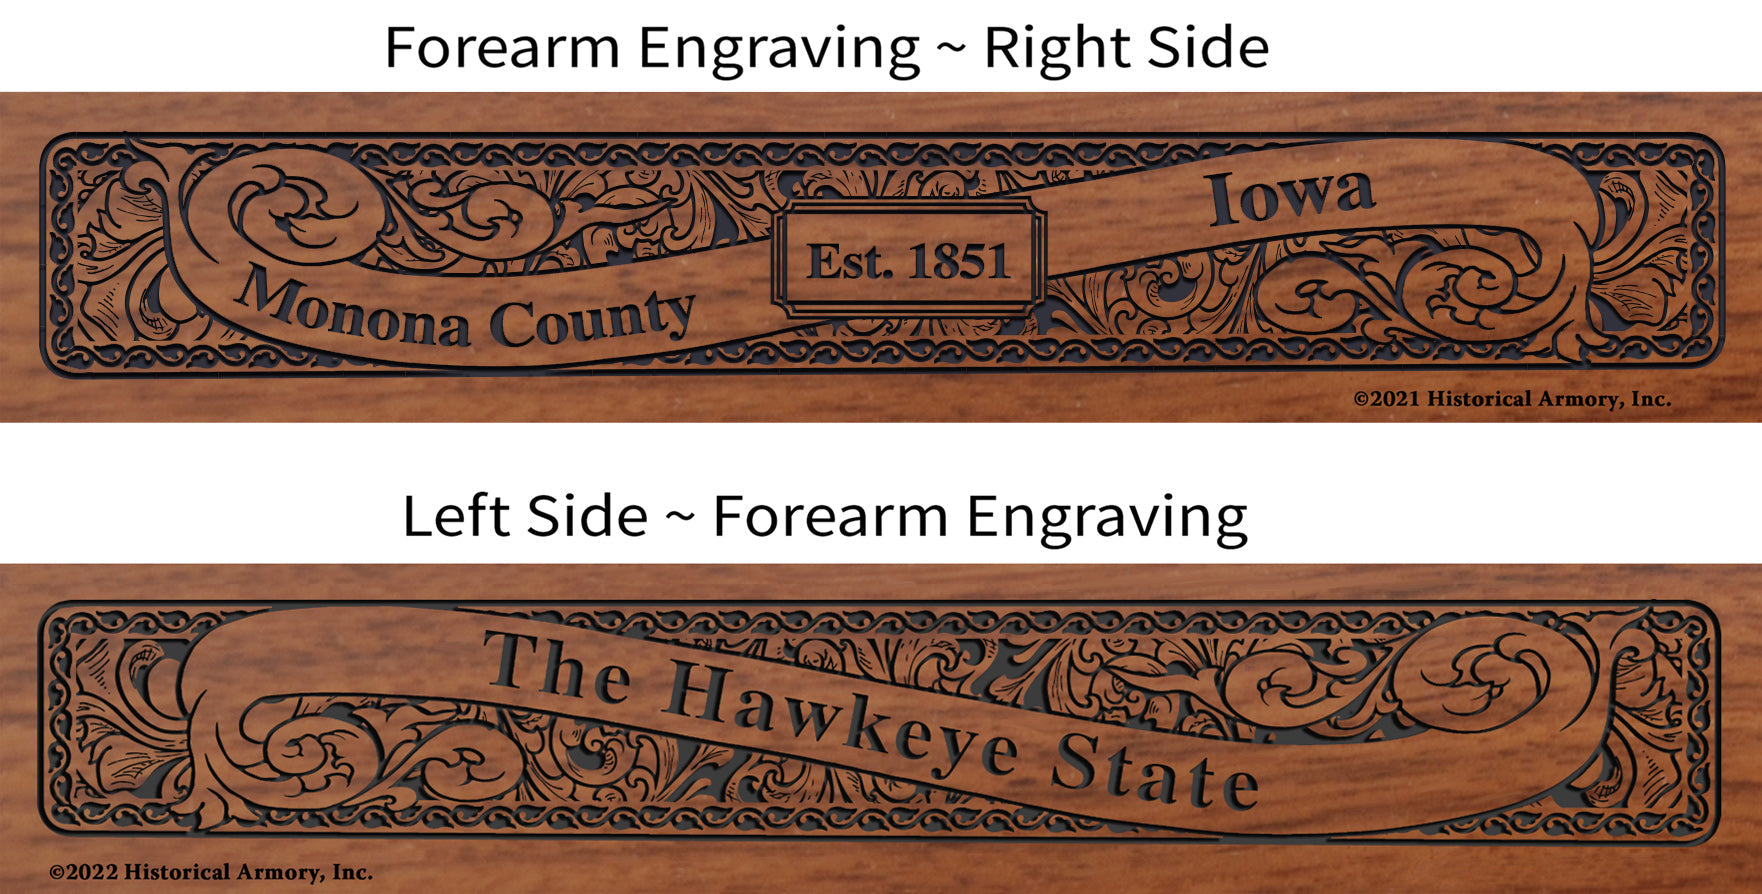 Monona County Iowa Engraved Rifle Forearm